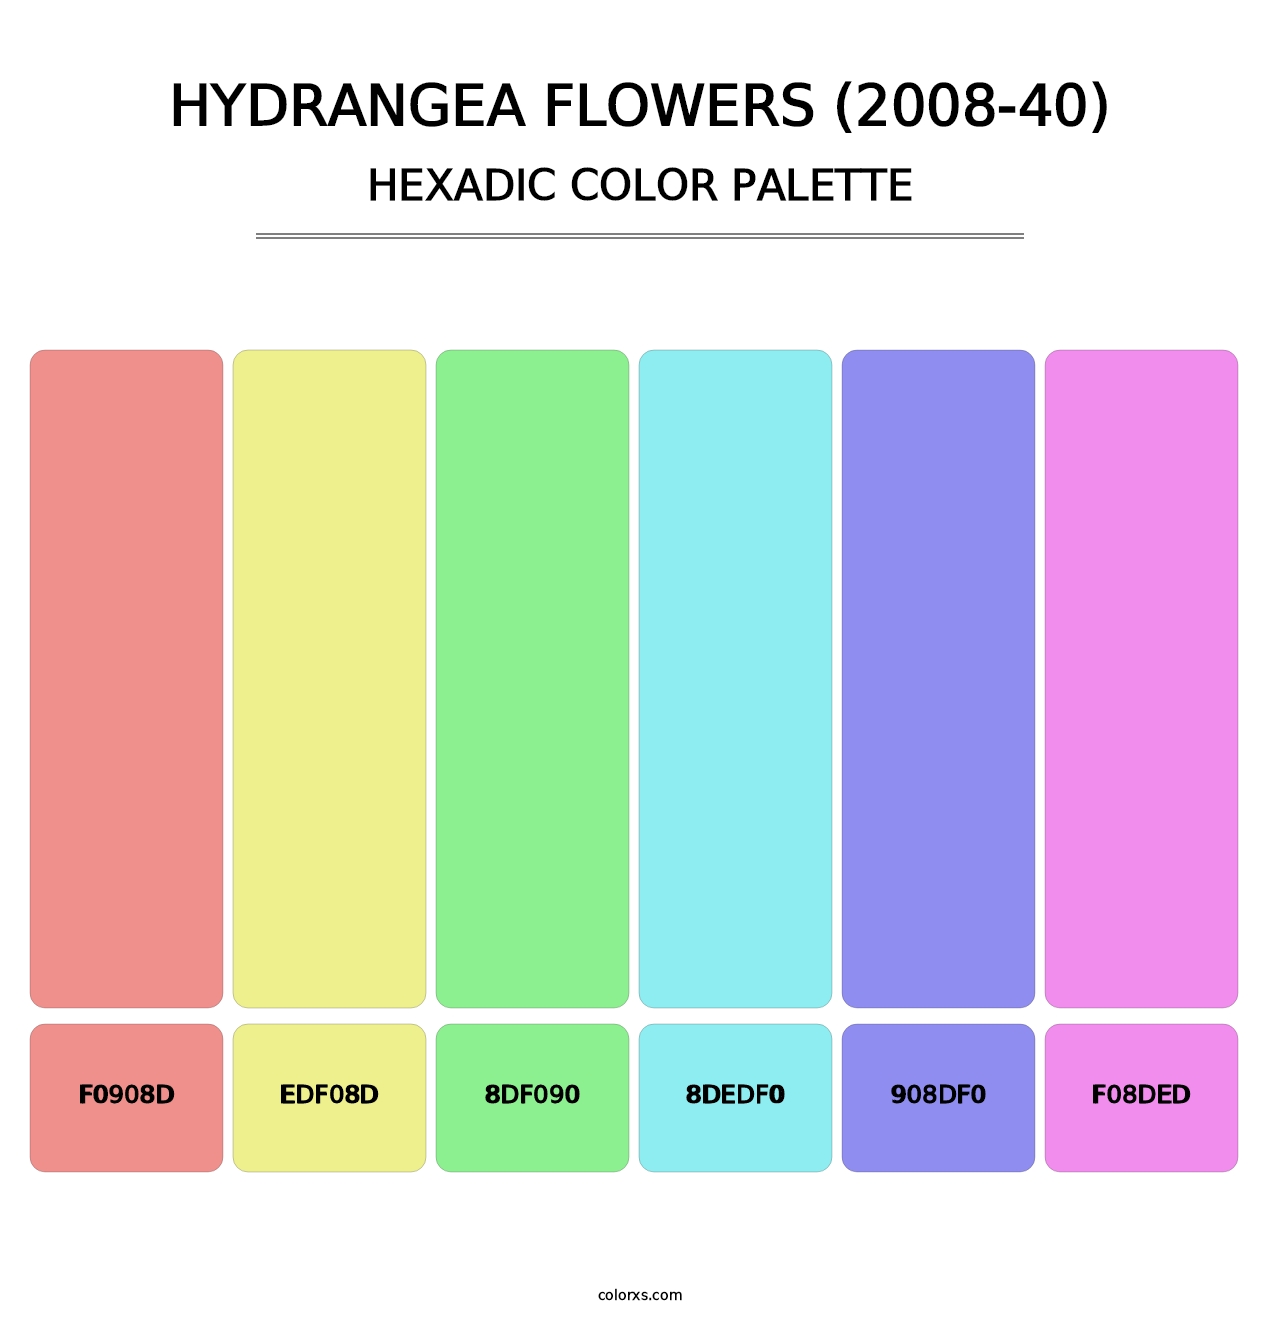 Hydrangea Flowers (2008-40) - Hexadic Color Palette